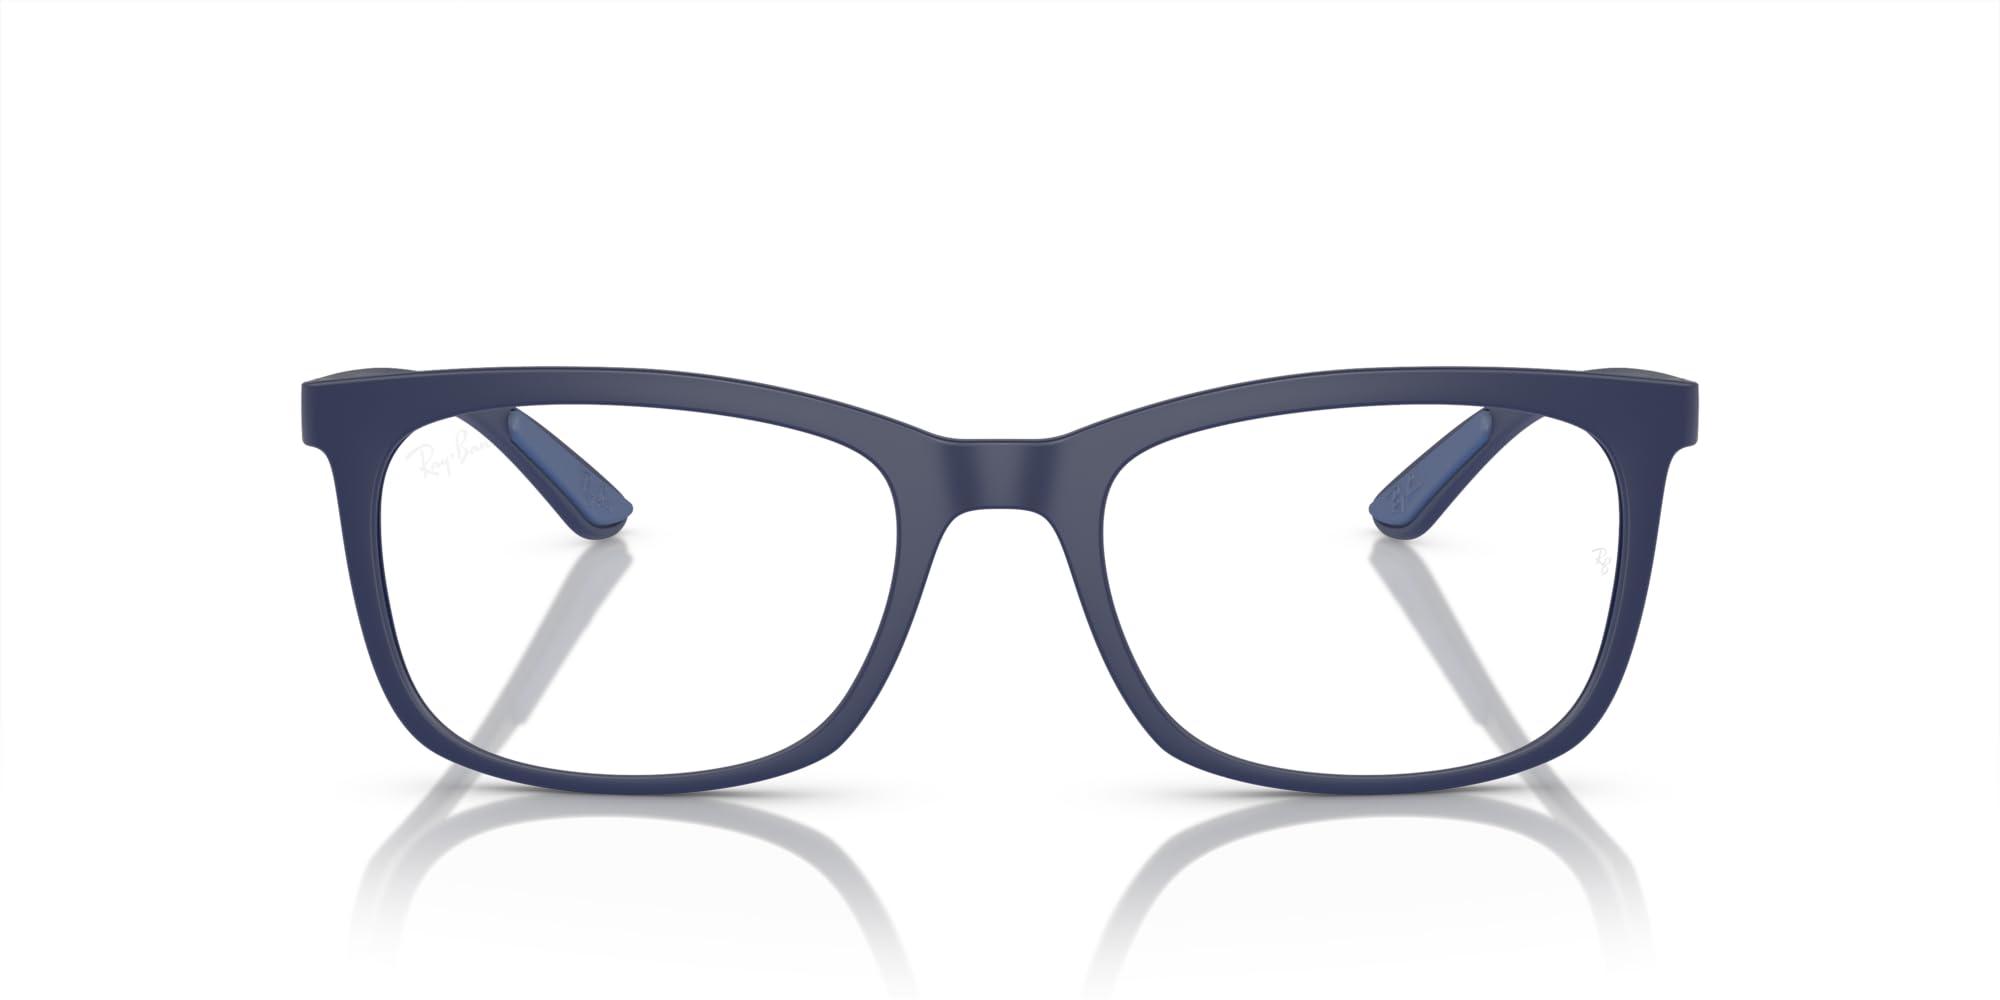 Ray-Ban Rx7230 Square Prescription Eyewear Frames in Black | Lyst